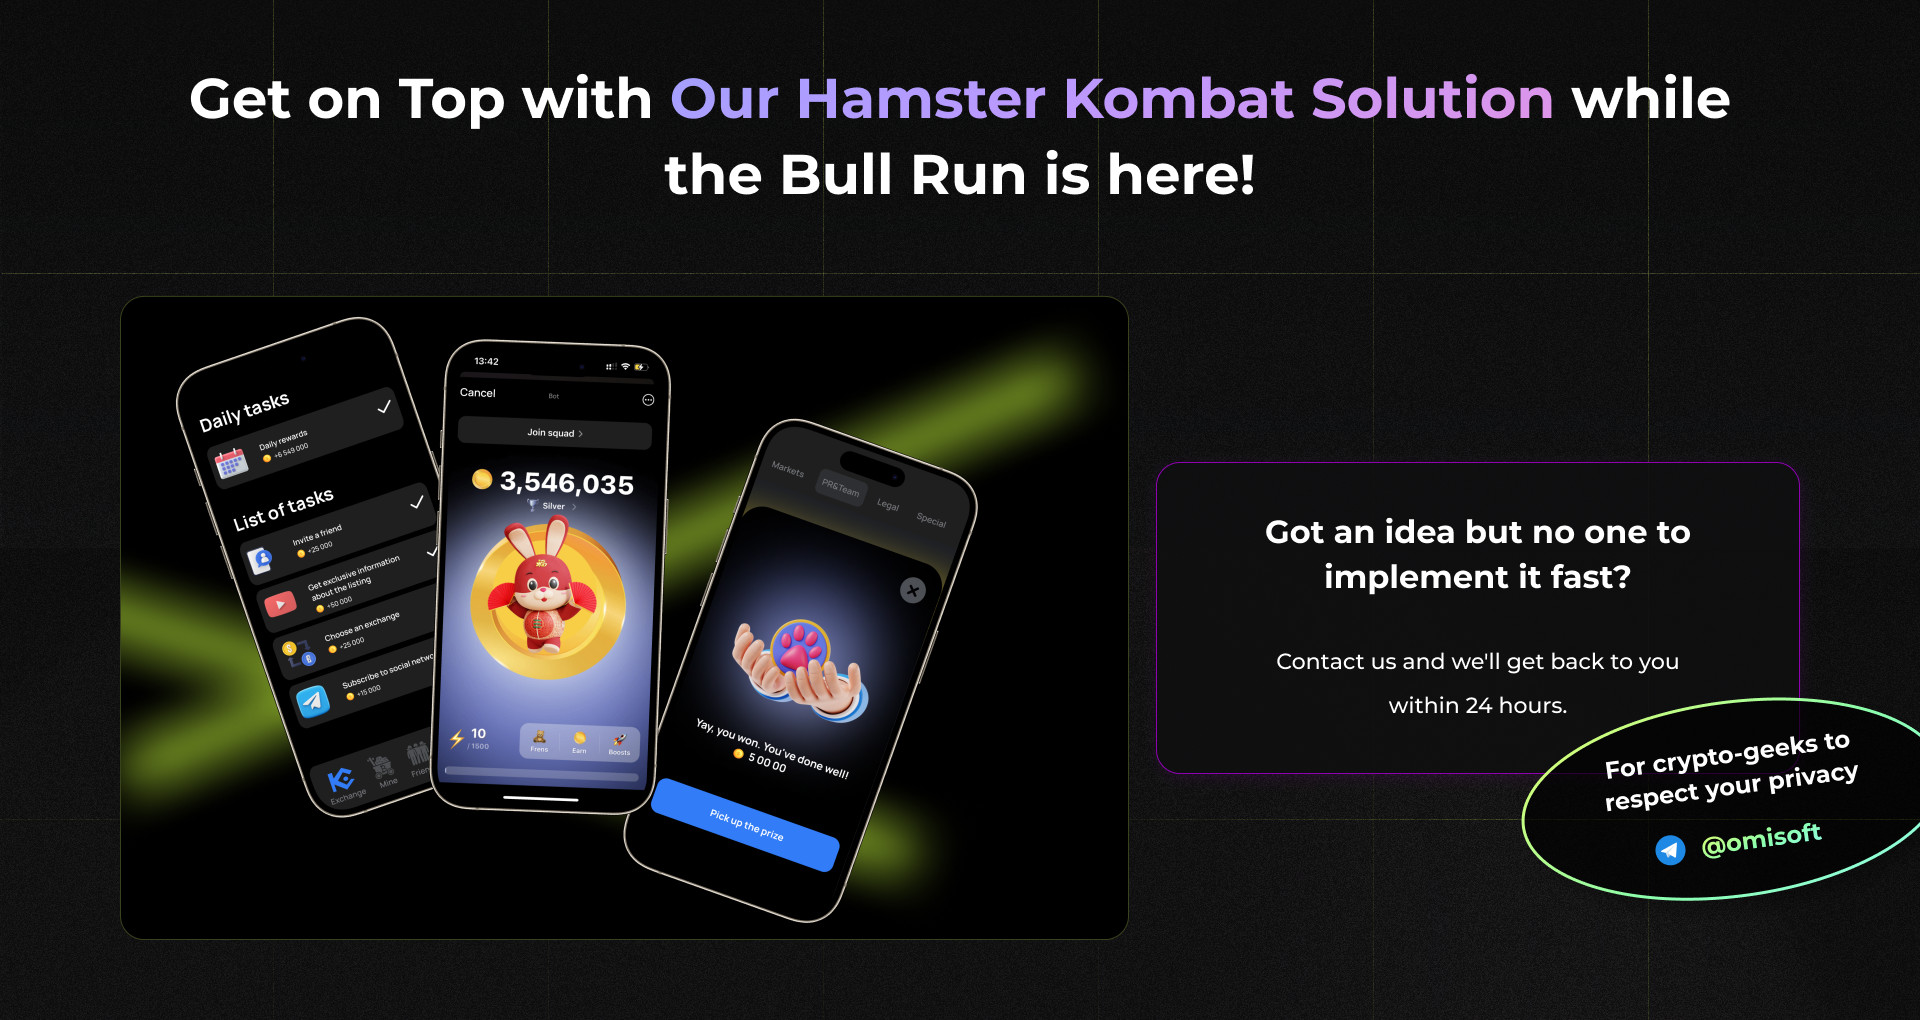 Hamster Kombat Source Code GitHub Image